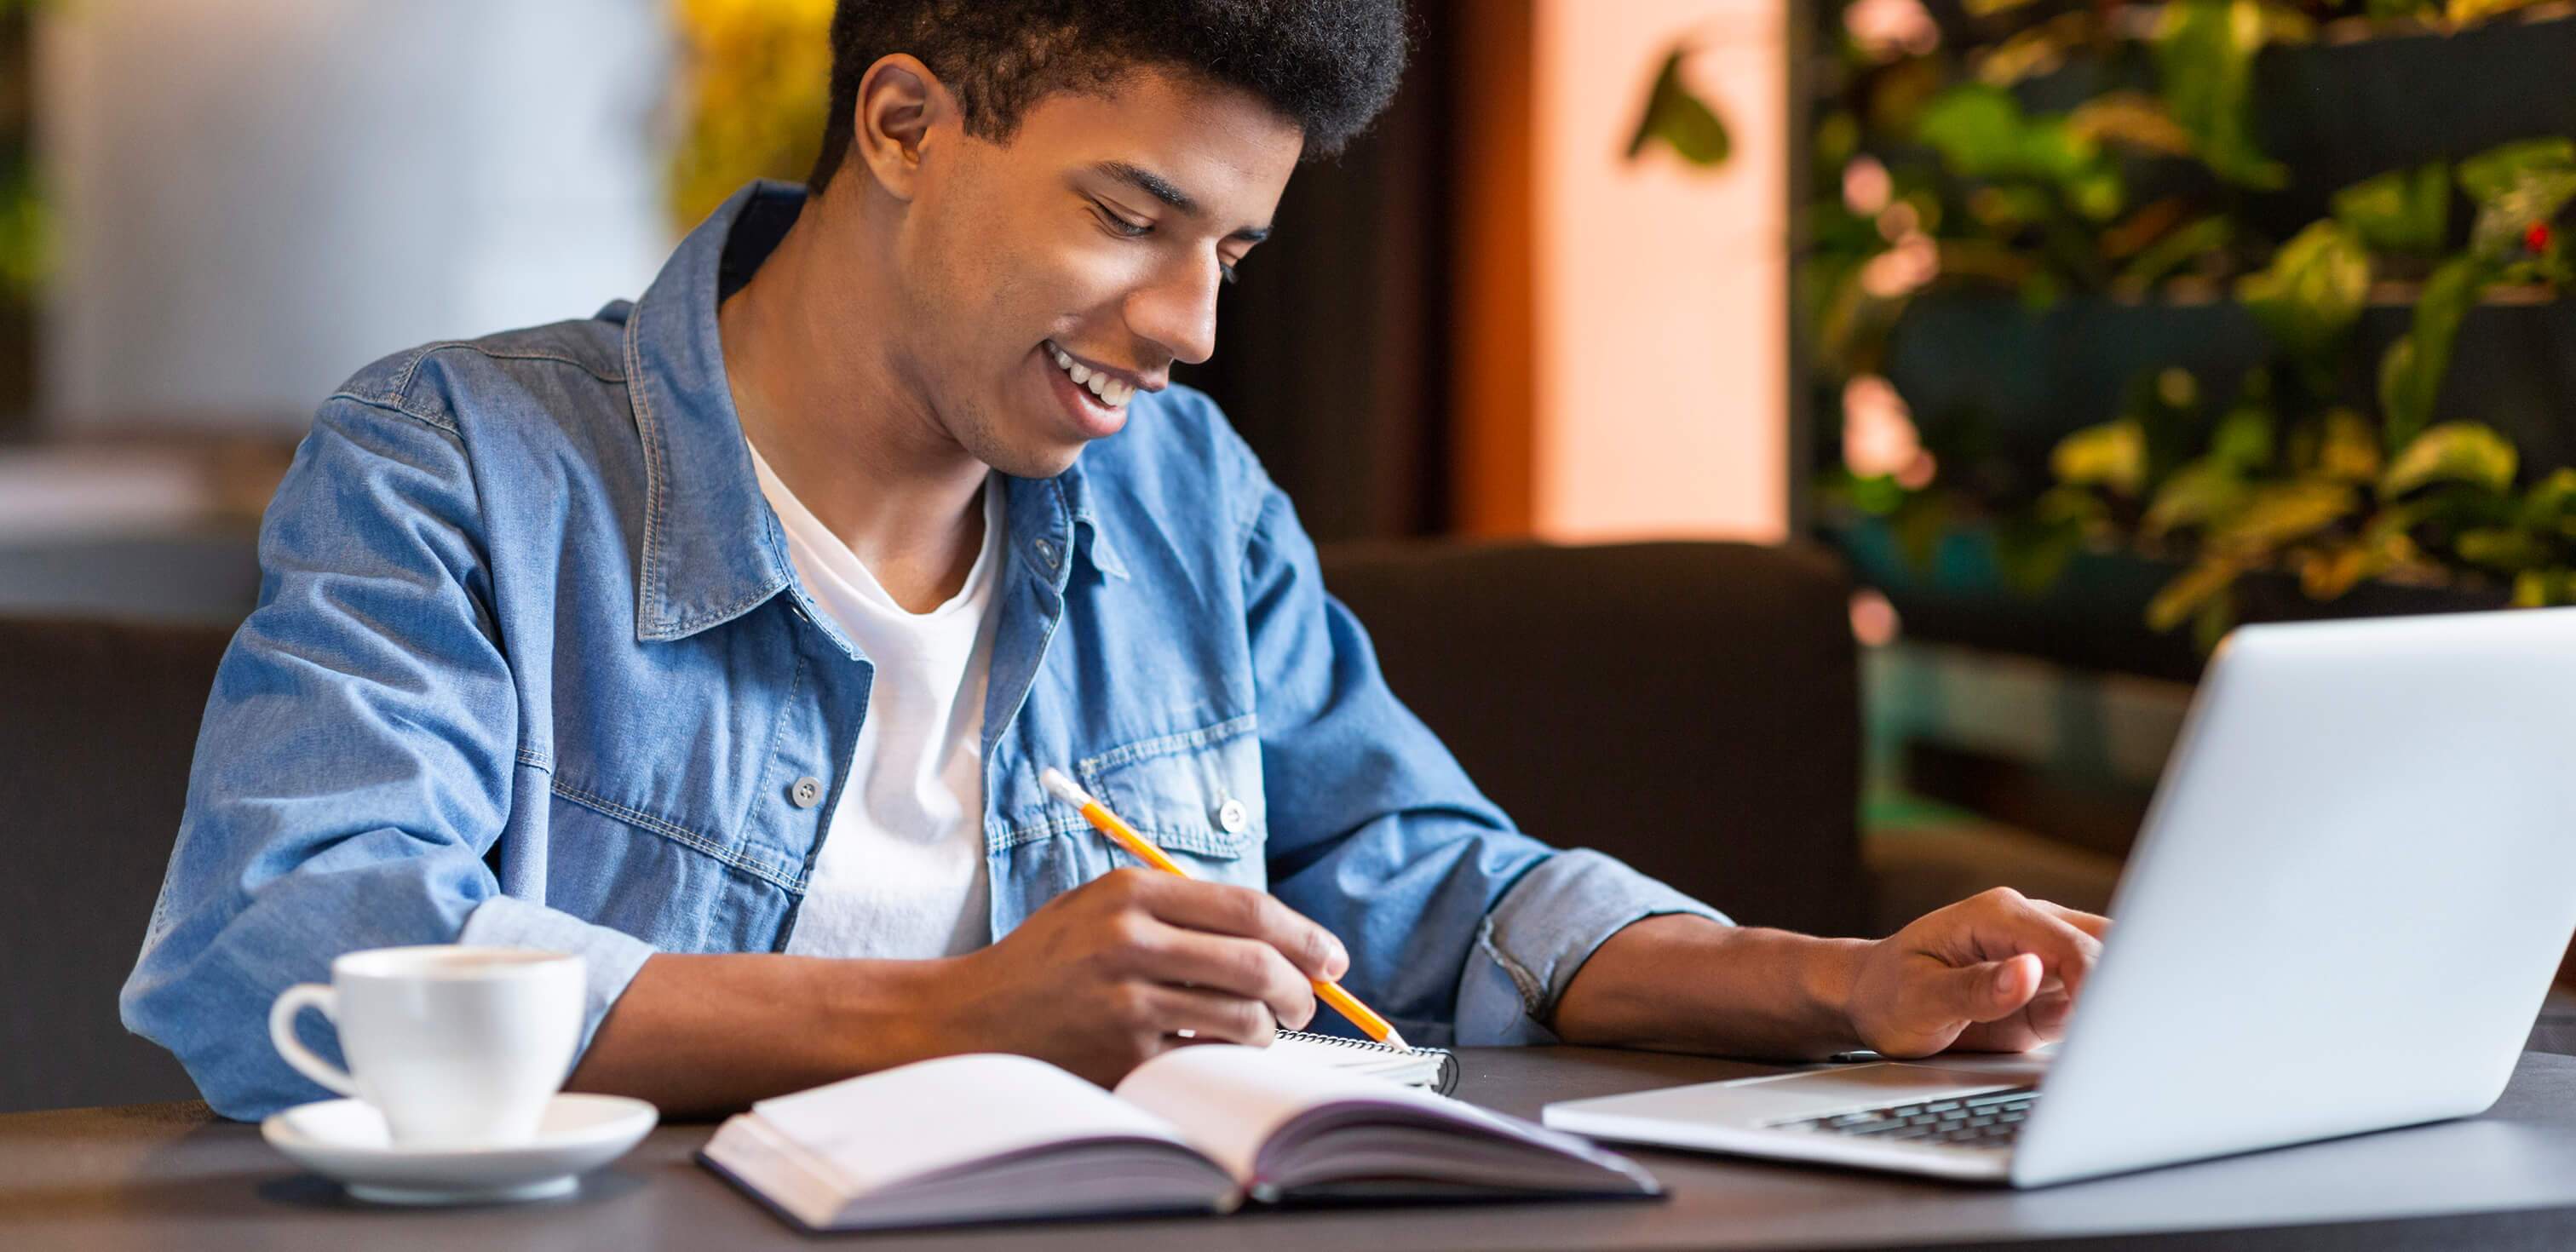 Curso de redação online: fotografia de um menino sorrindo enquanto escreve algo. À sua frente está um notebook.